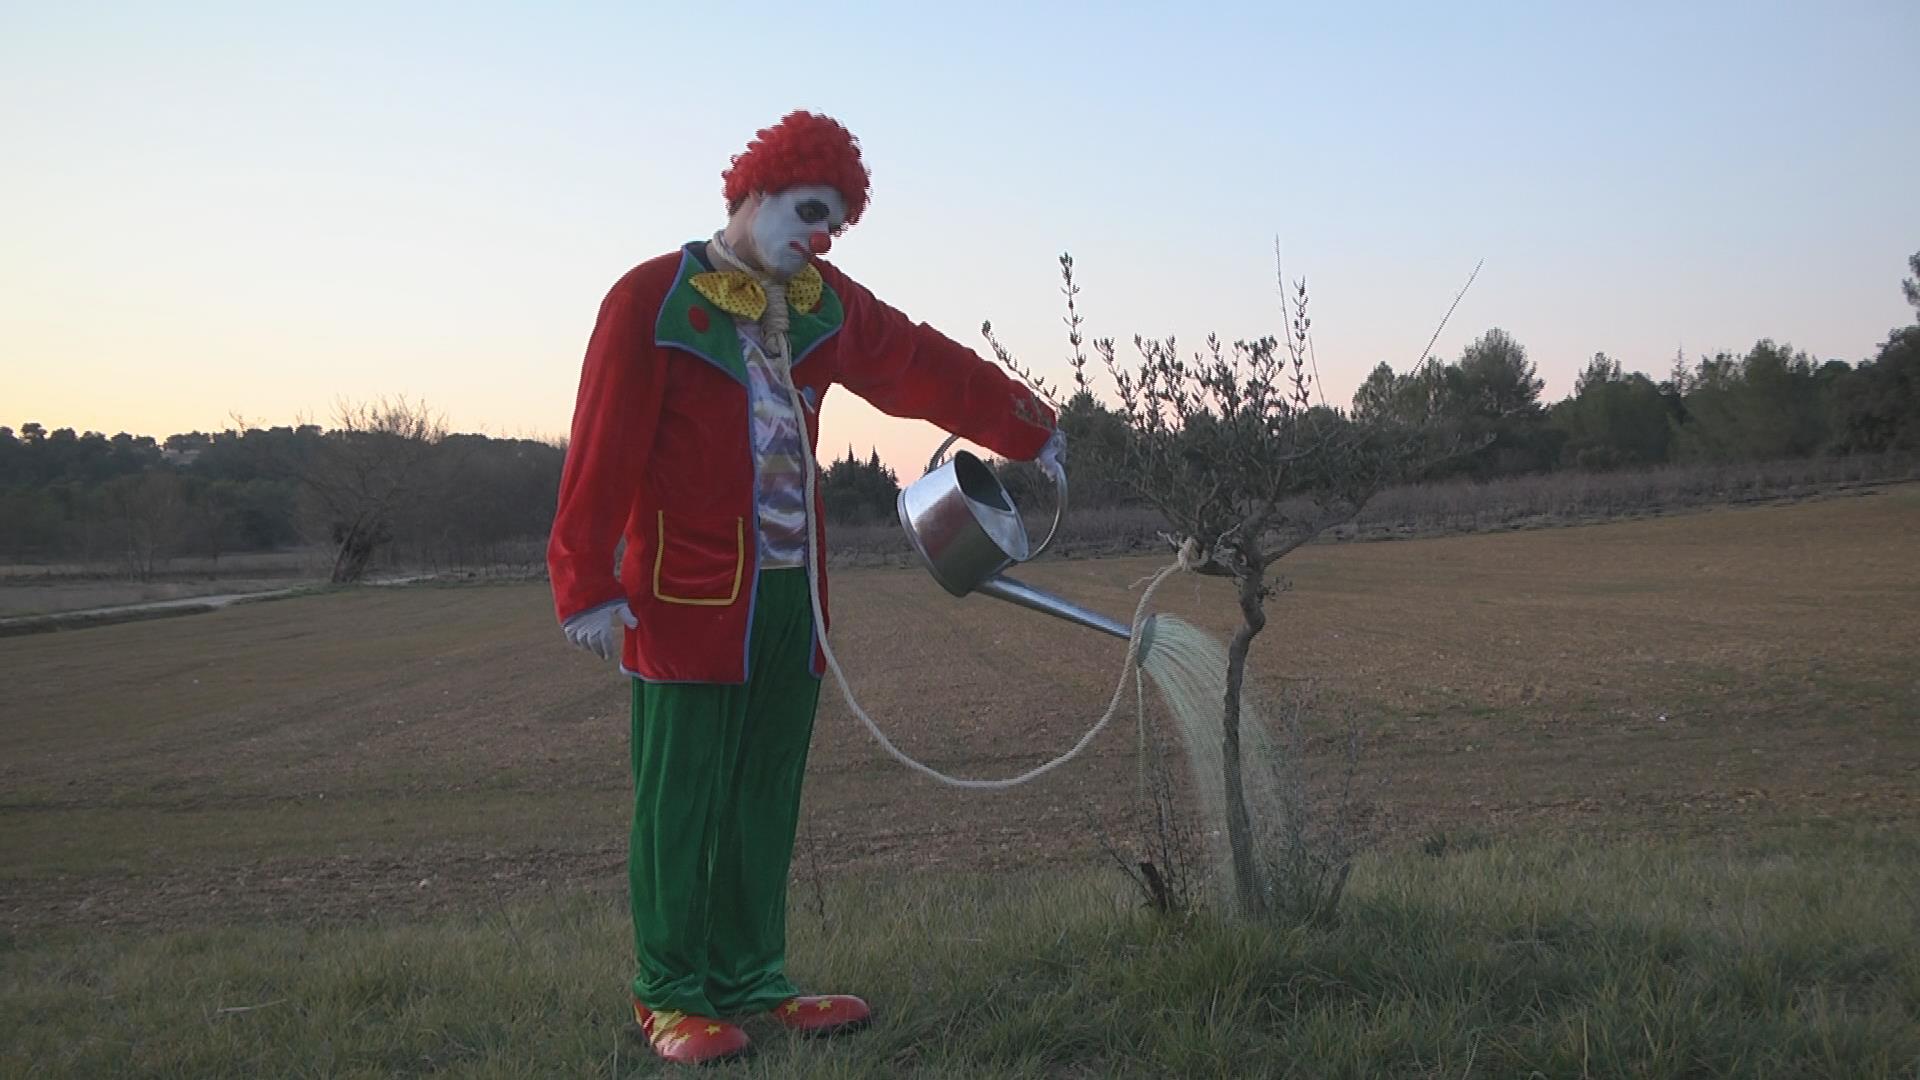 Obrázek Clown suicide